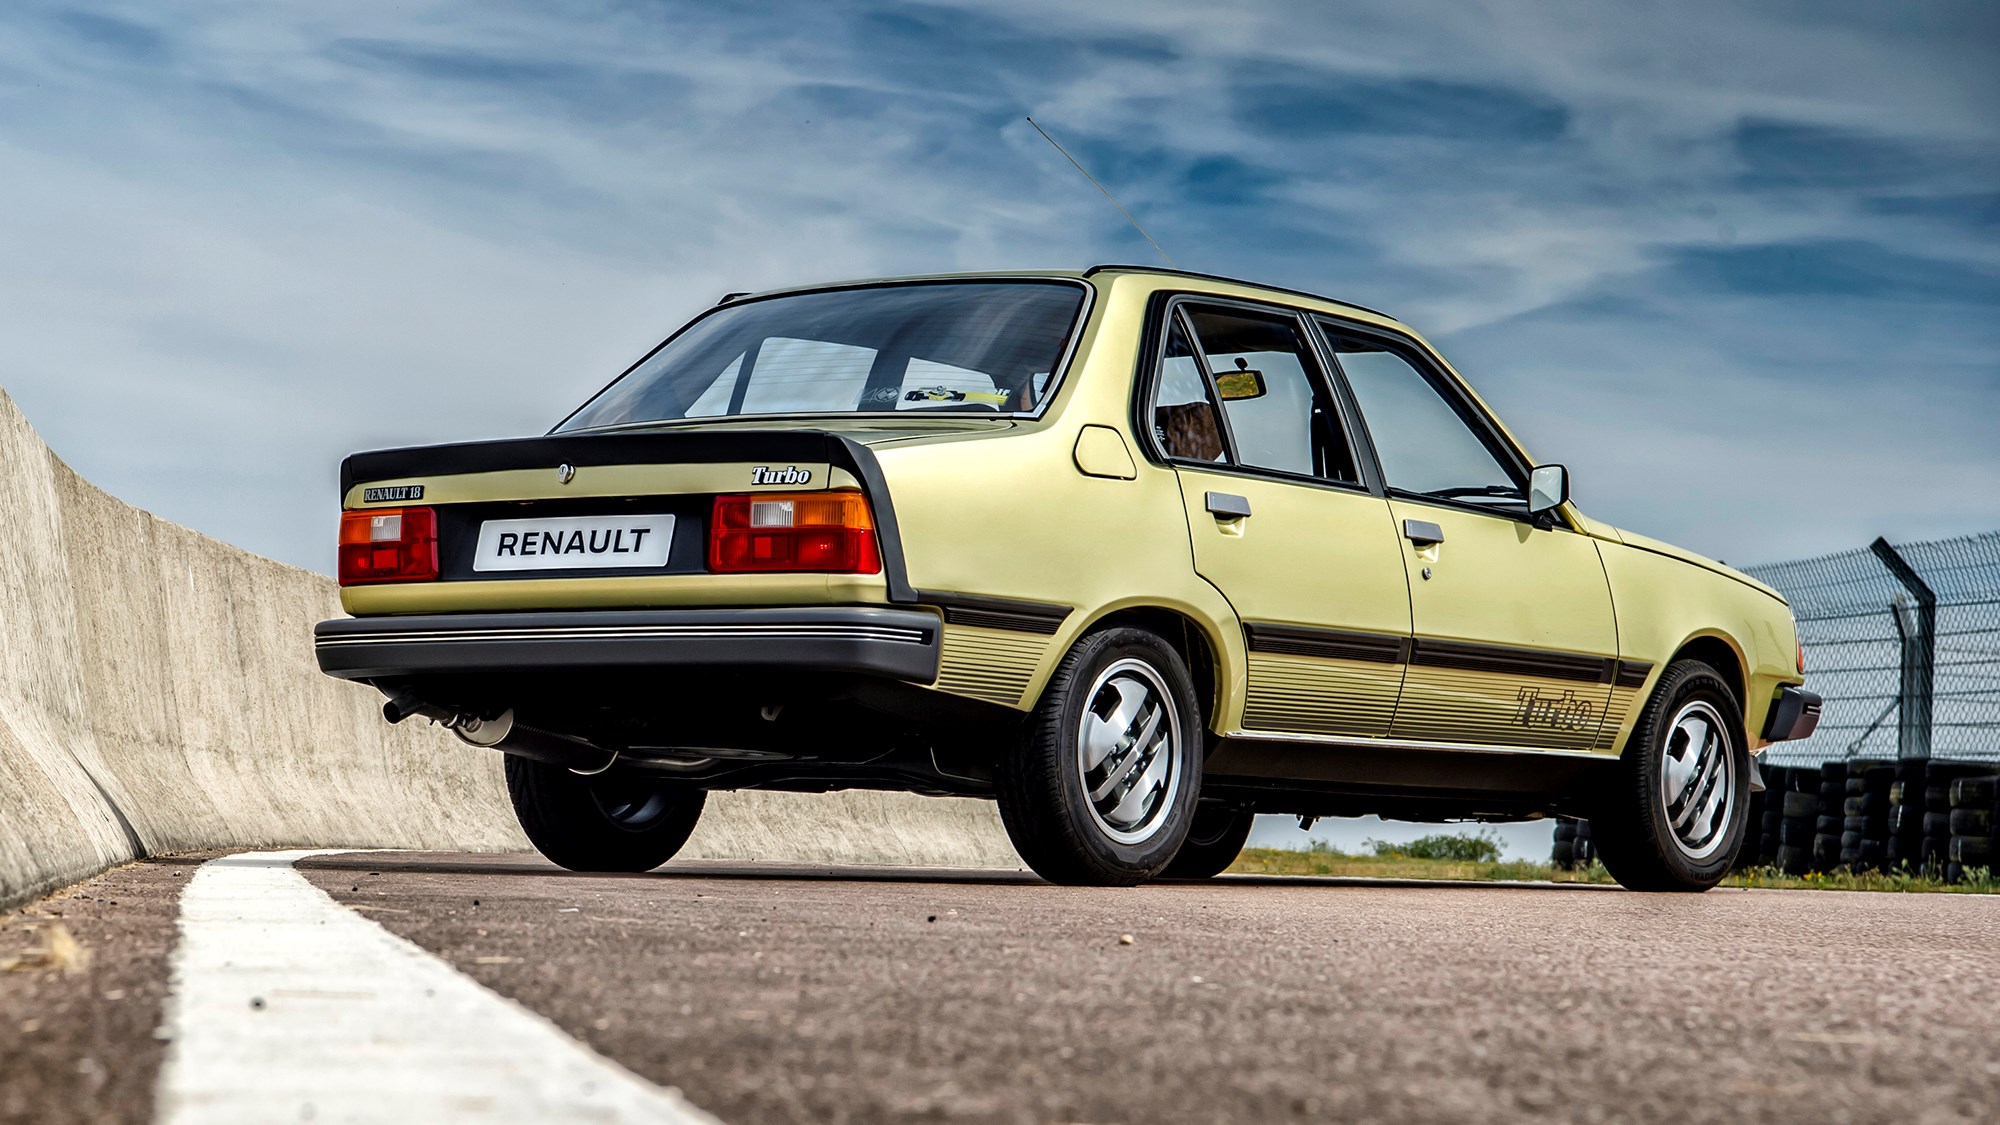 Renault 18 Turbo rear three-quarter view